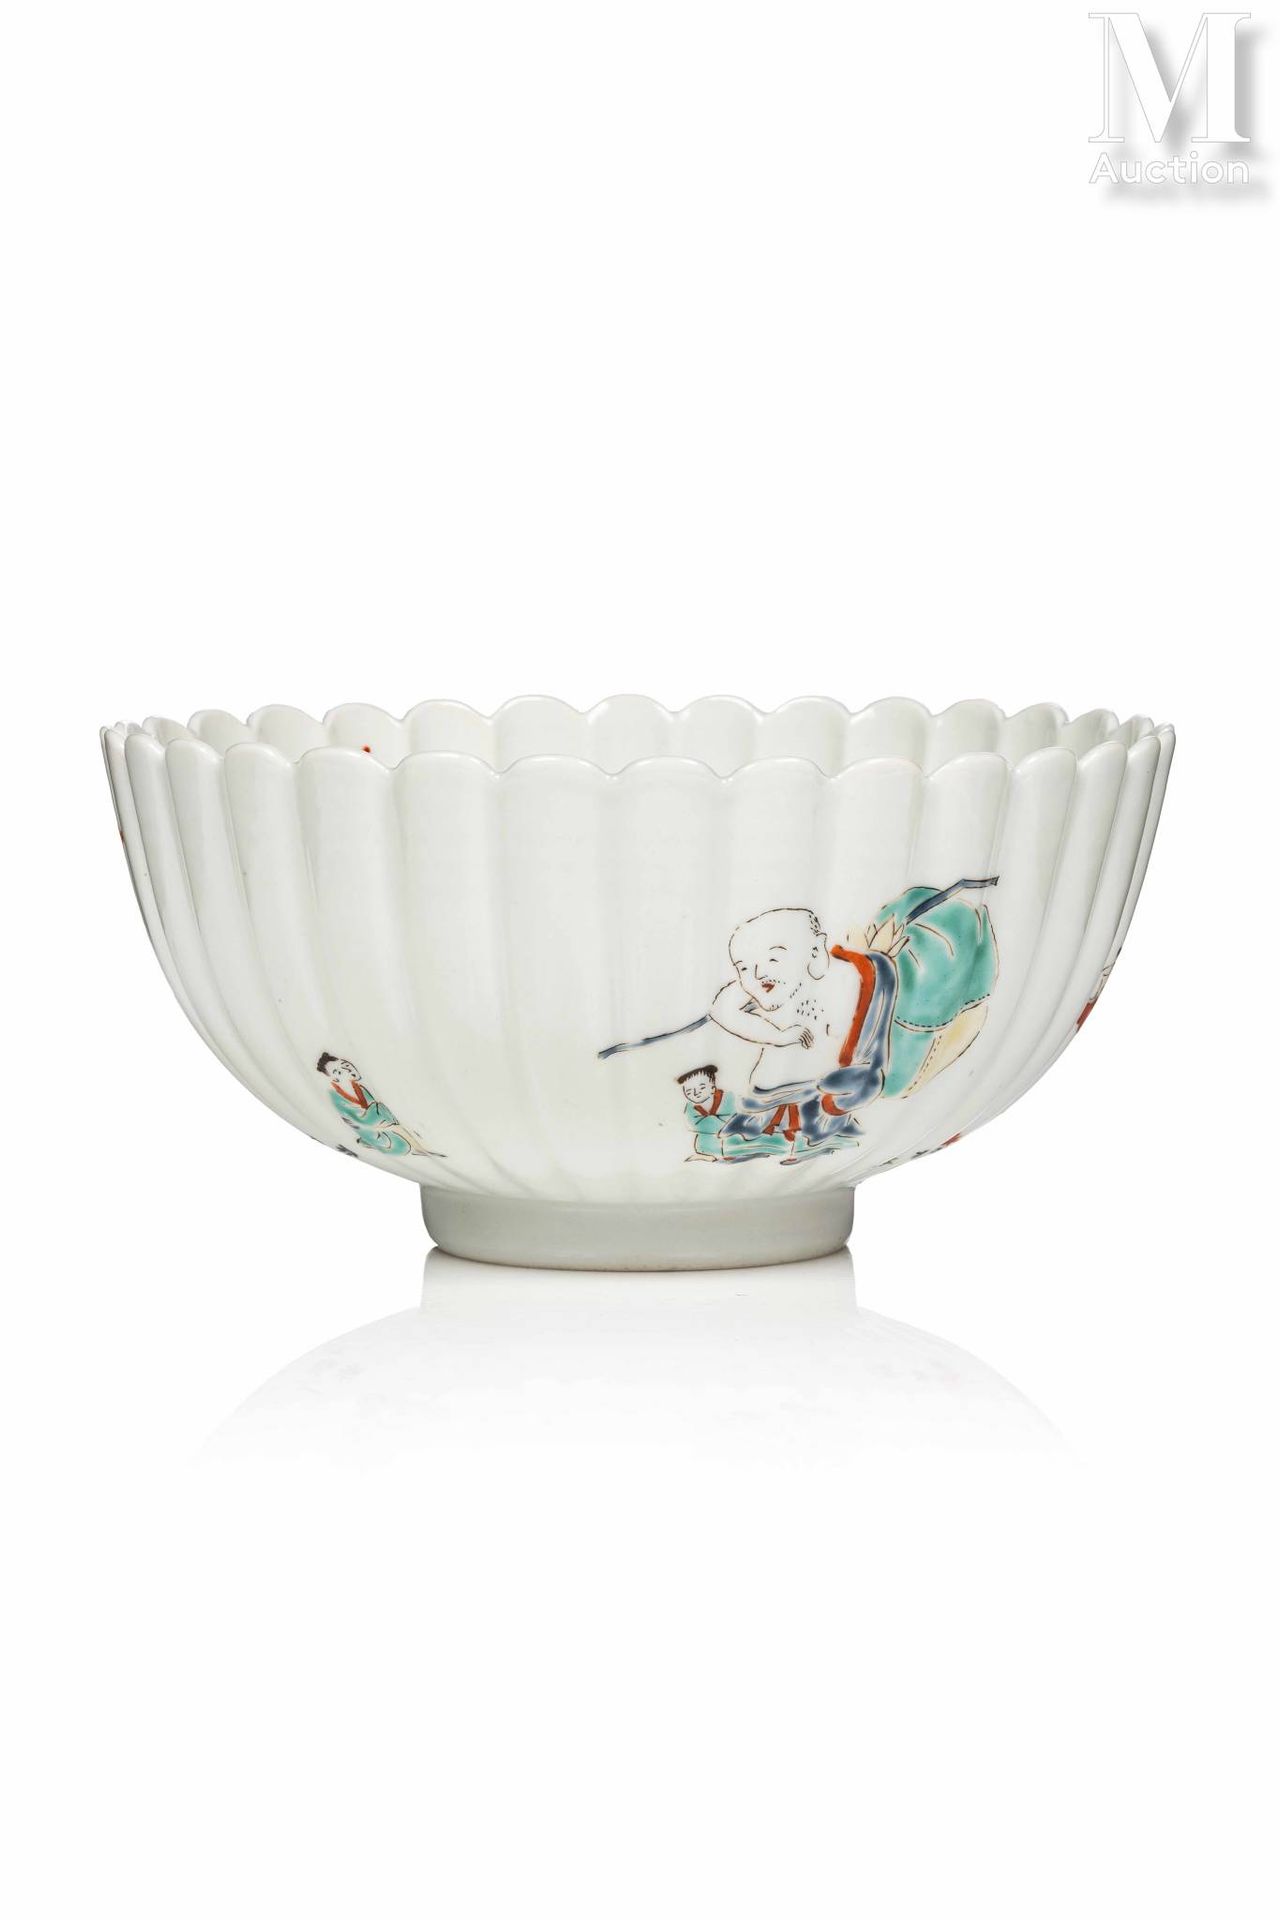 *JAPON, Epoque Edo (1603-1868) Rare Kakiemon porcelain bowl

mounted on a small &hellip;